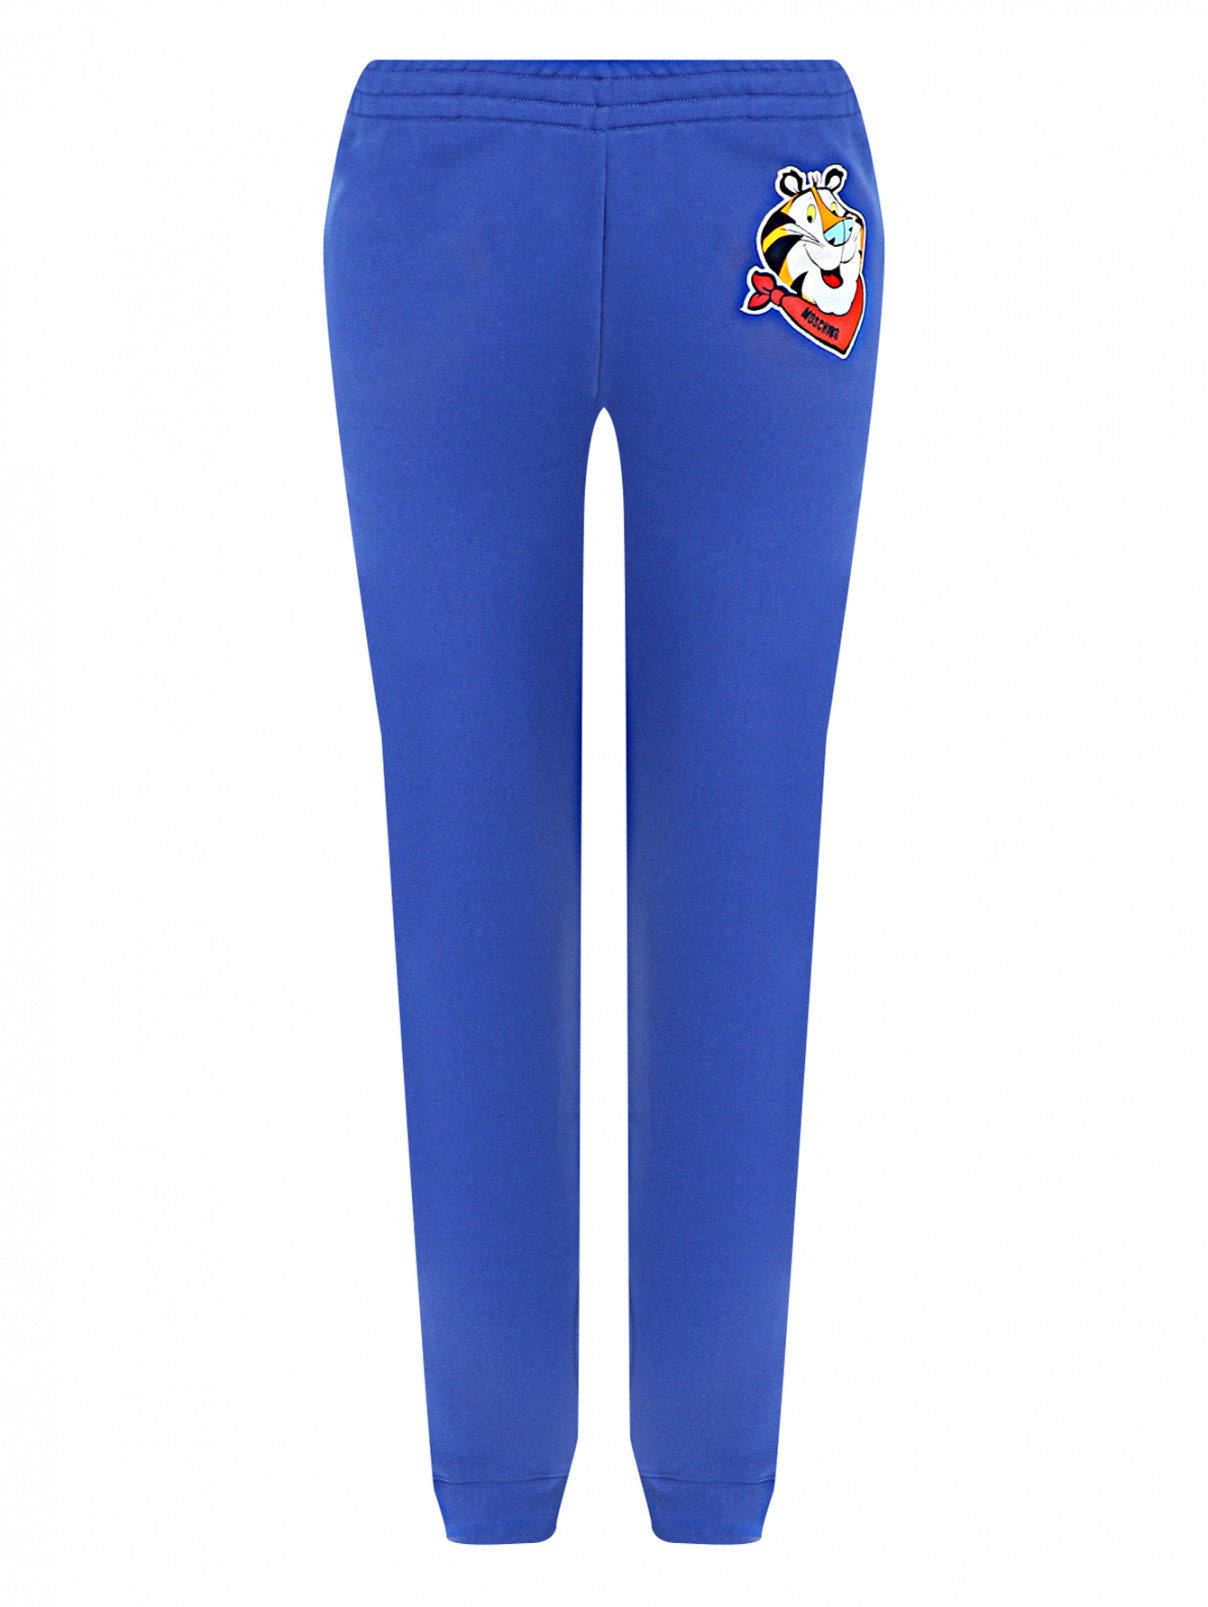 Трикотажные брюки на резинке с принтом Moschino  –  Общий вид  – Цвет:  Синий